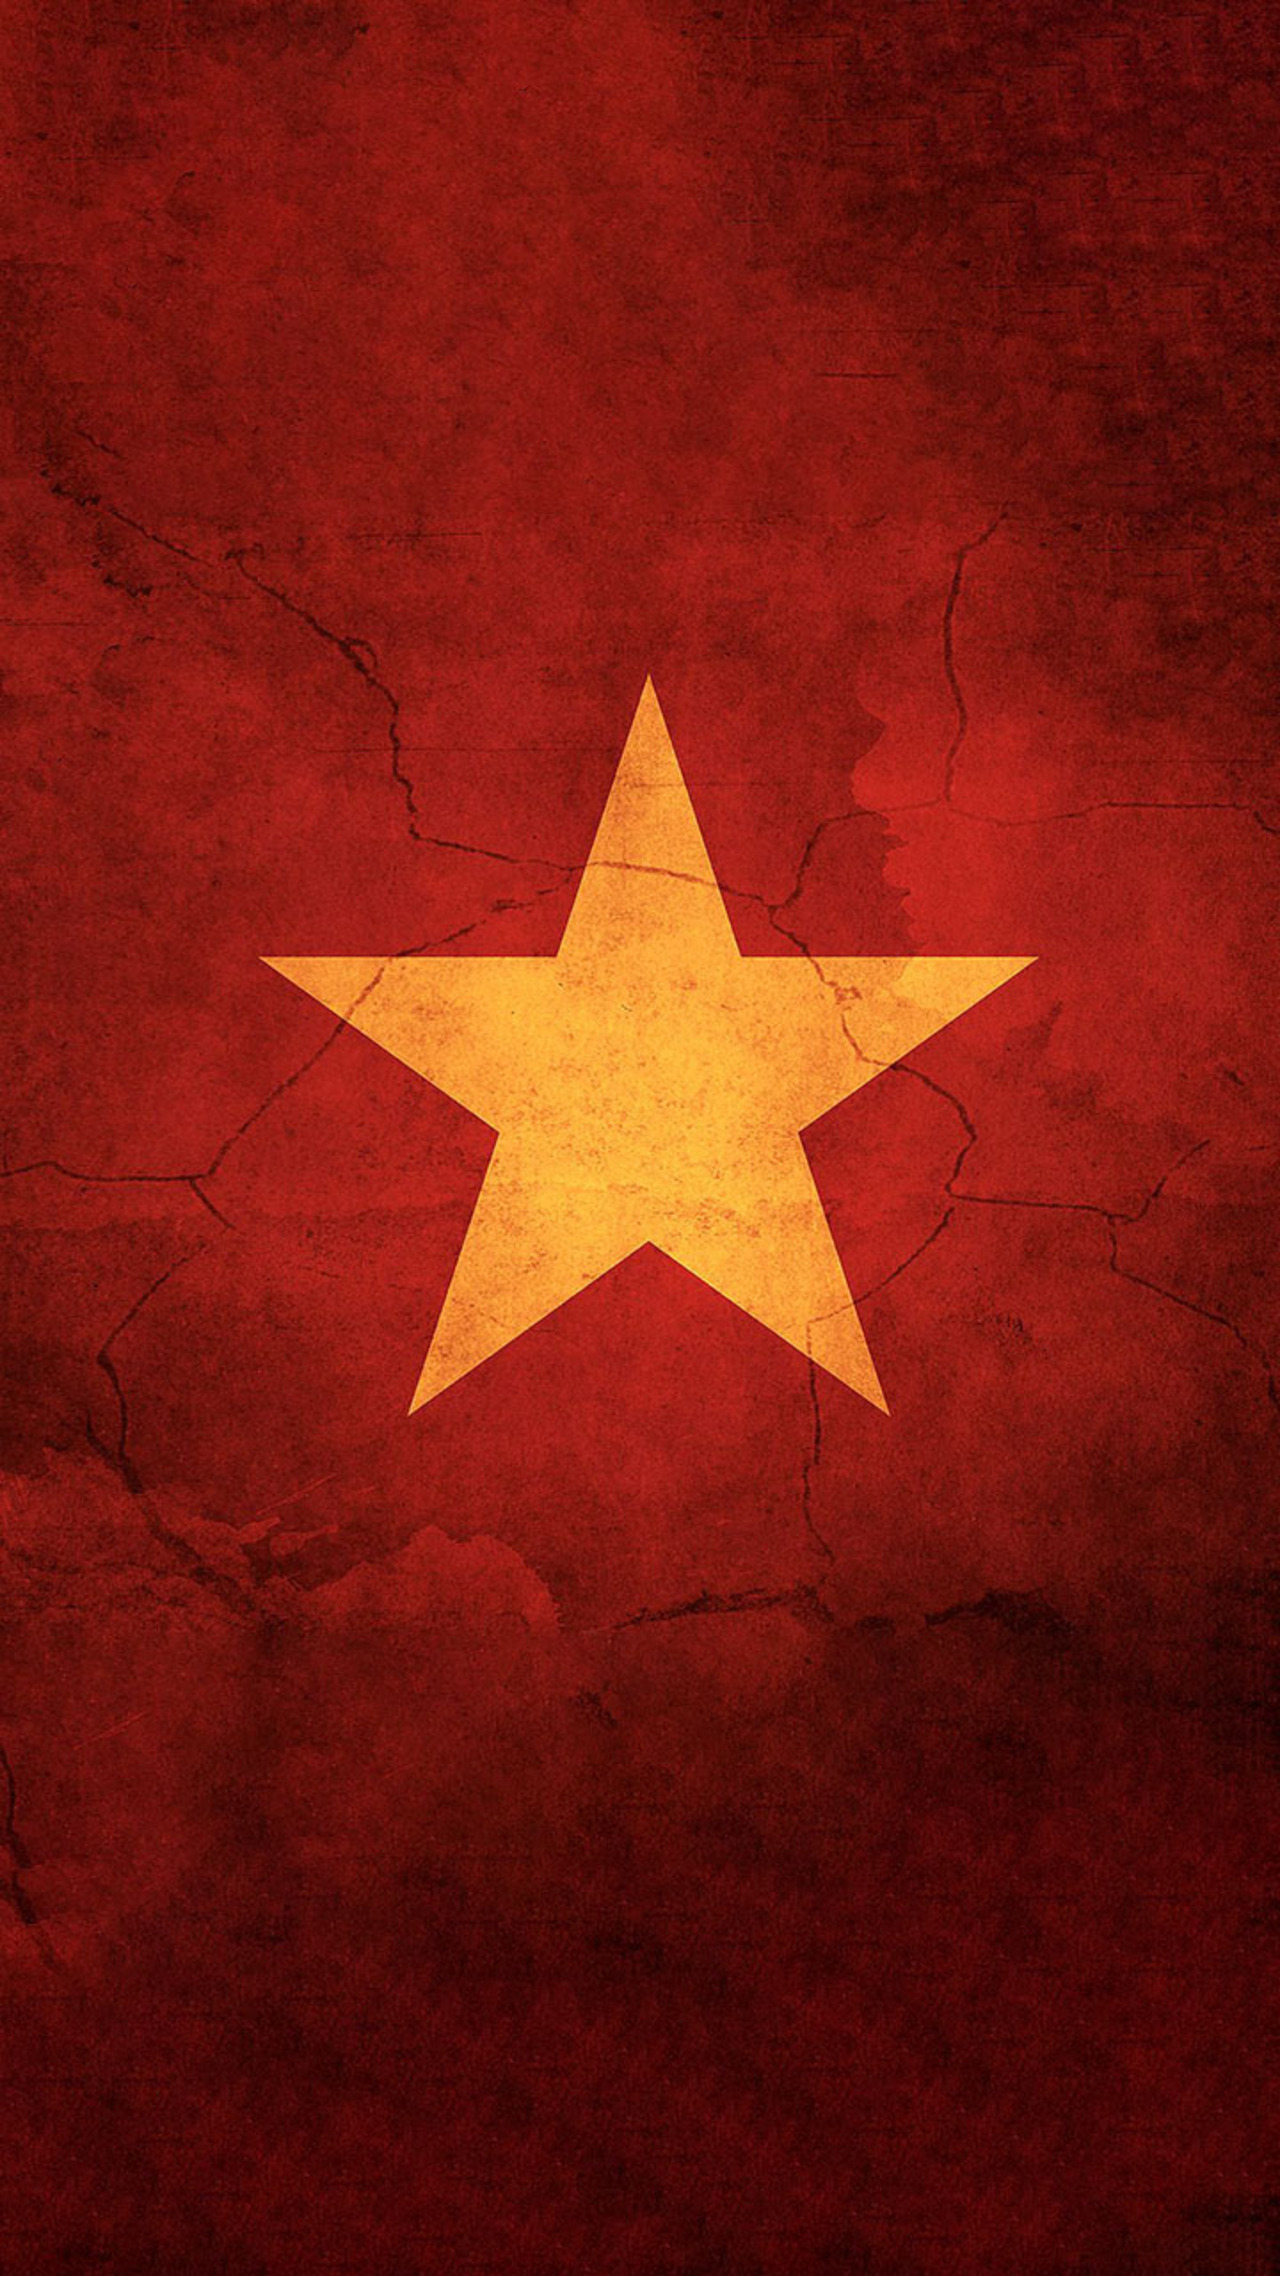 Tình yêu nước: Tình yêu nước là một cảm hứng vô cùng đỗi vĩnh cửu trong tâm hồn của mỗi công dân Việt Nam. Hãy xem hình ảnh liên quan để cảm nhận thêm, với những cảm xúc và suy nghĩ sâu sắc nhất, về tình yêu dành cho đất nước và con người Việt Nam.